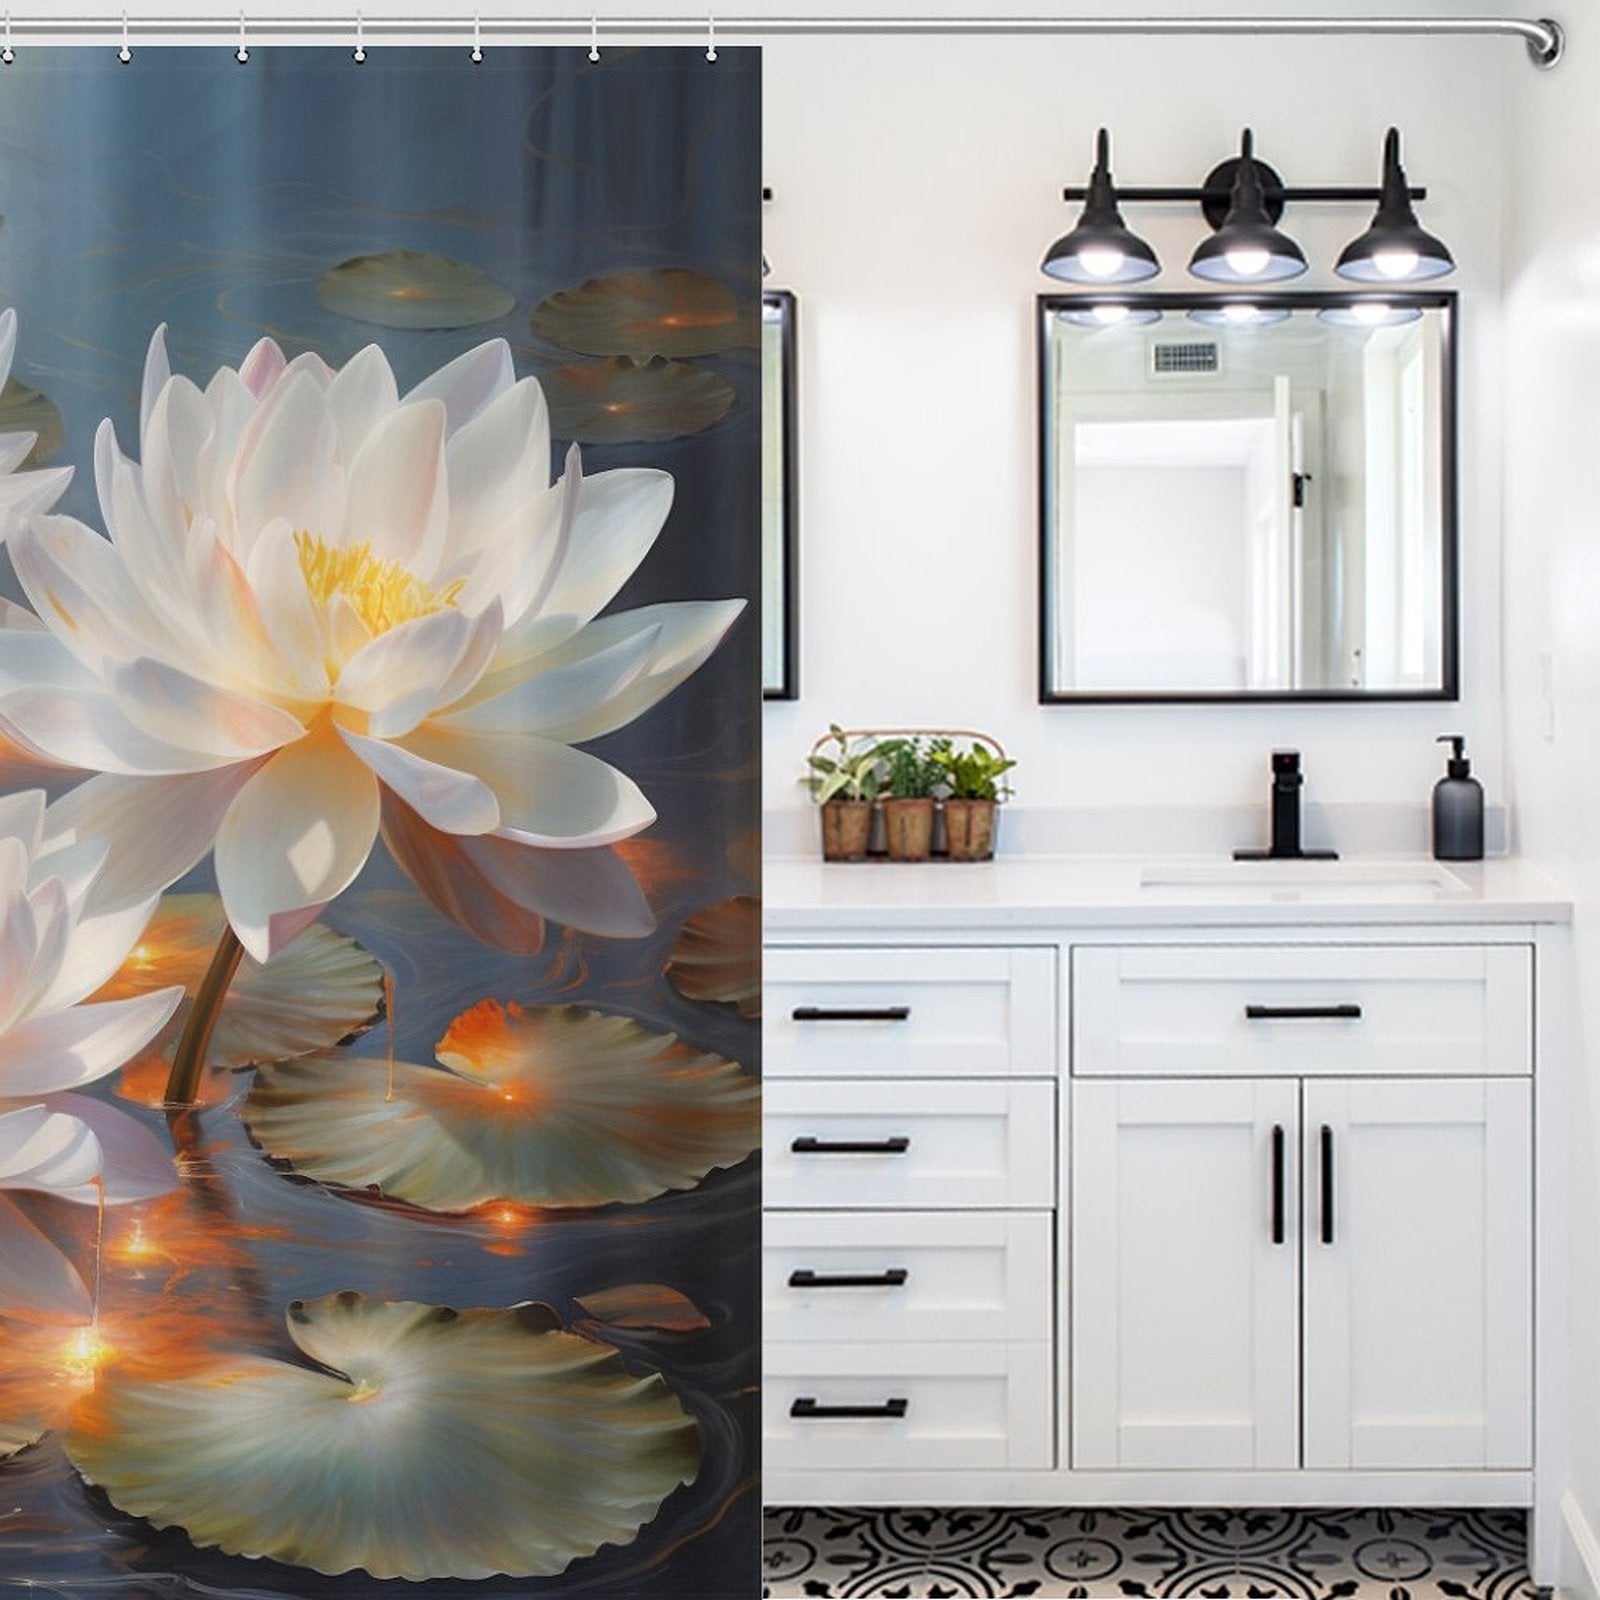 Elegant Lotus Shower Curtain